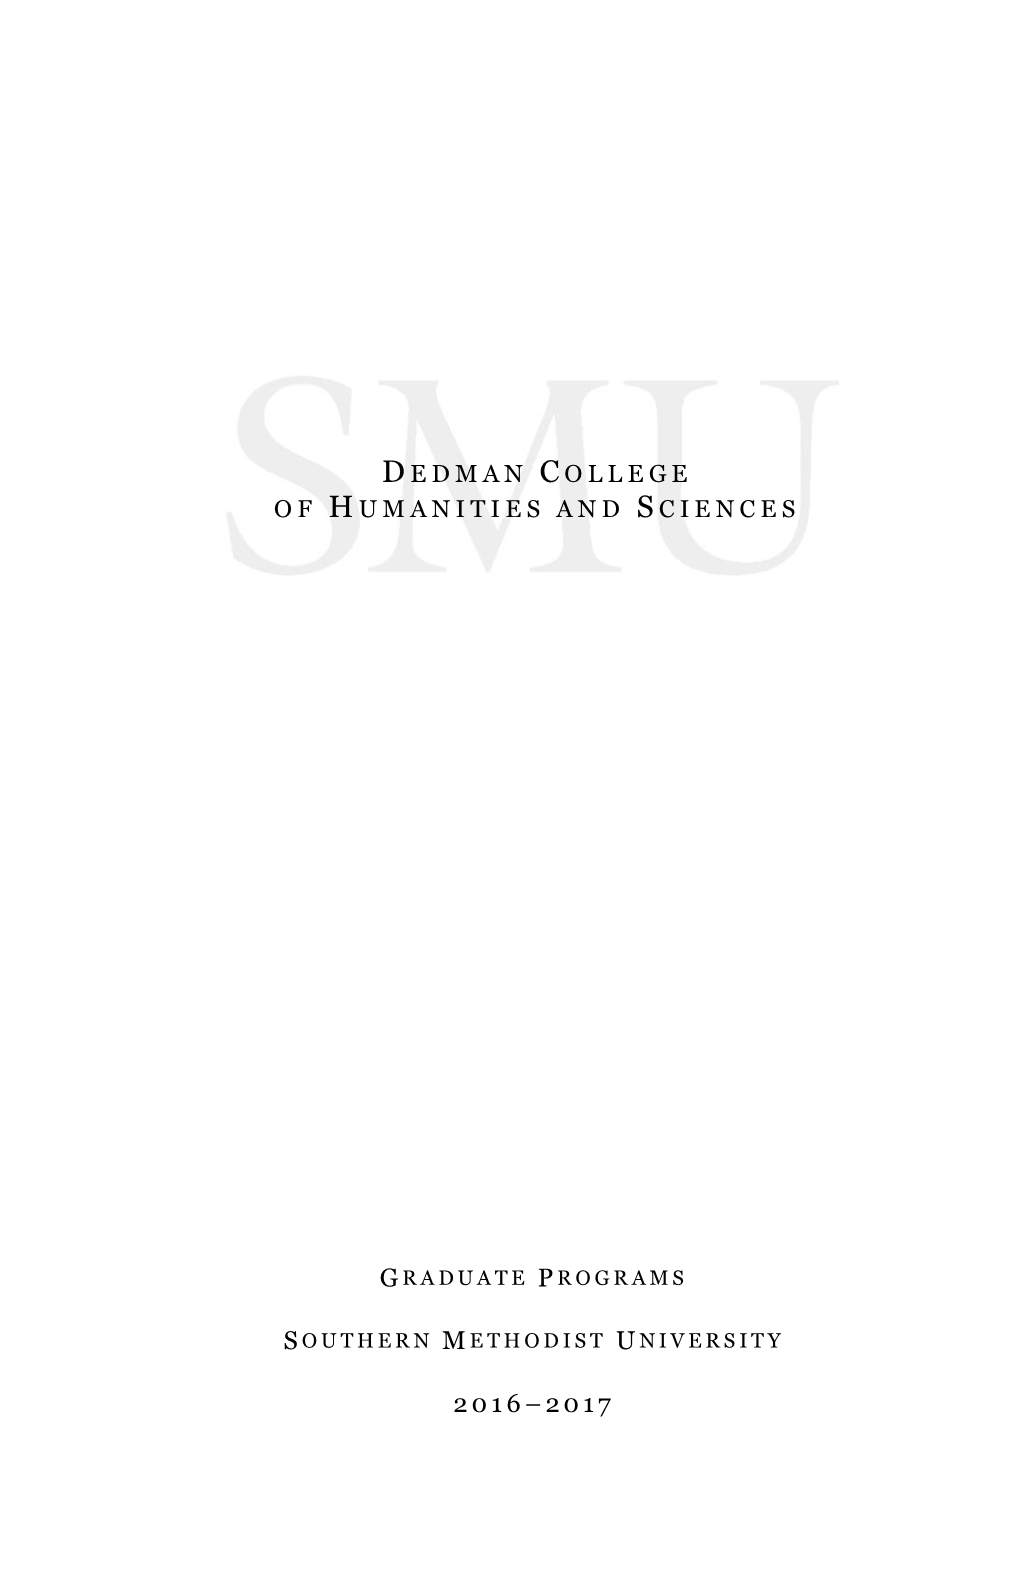 L. Dedman College GR Catalog Master File